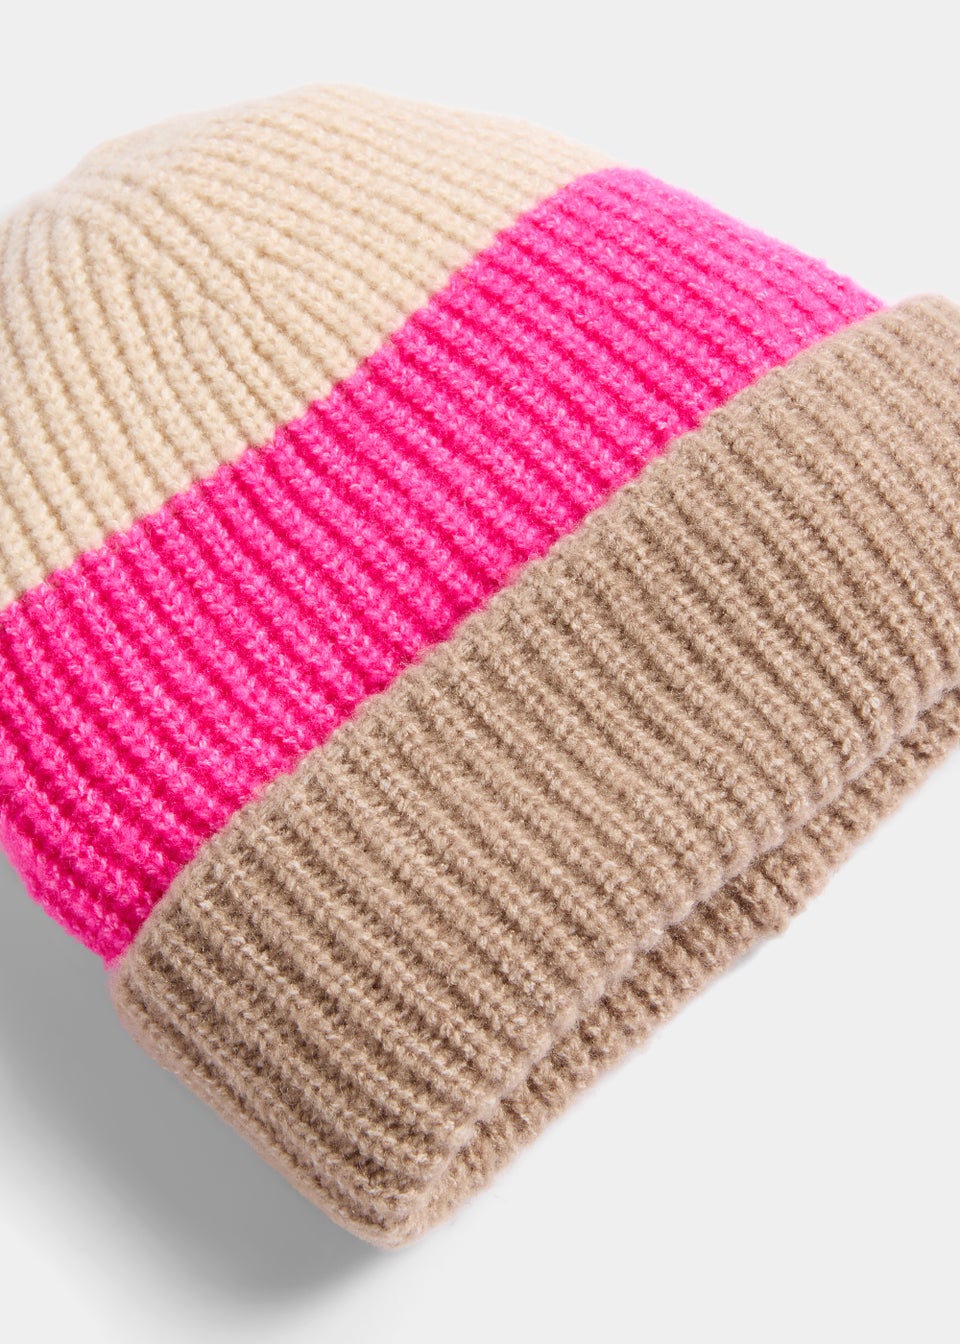 Pink & Beige Beanie Hat